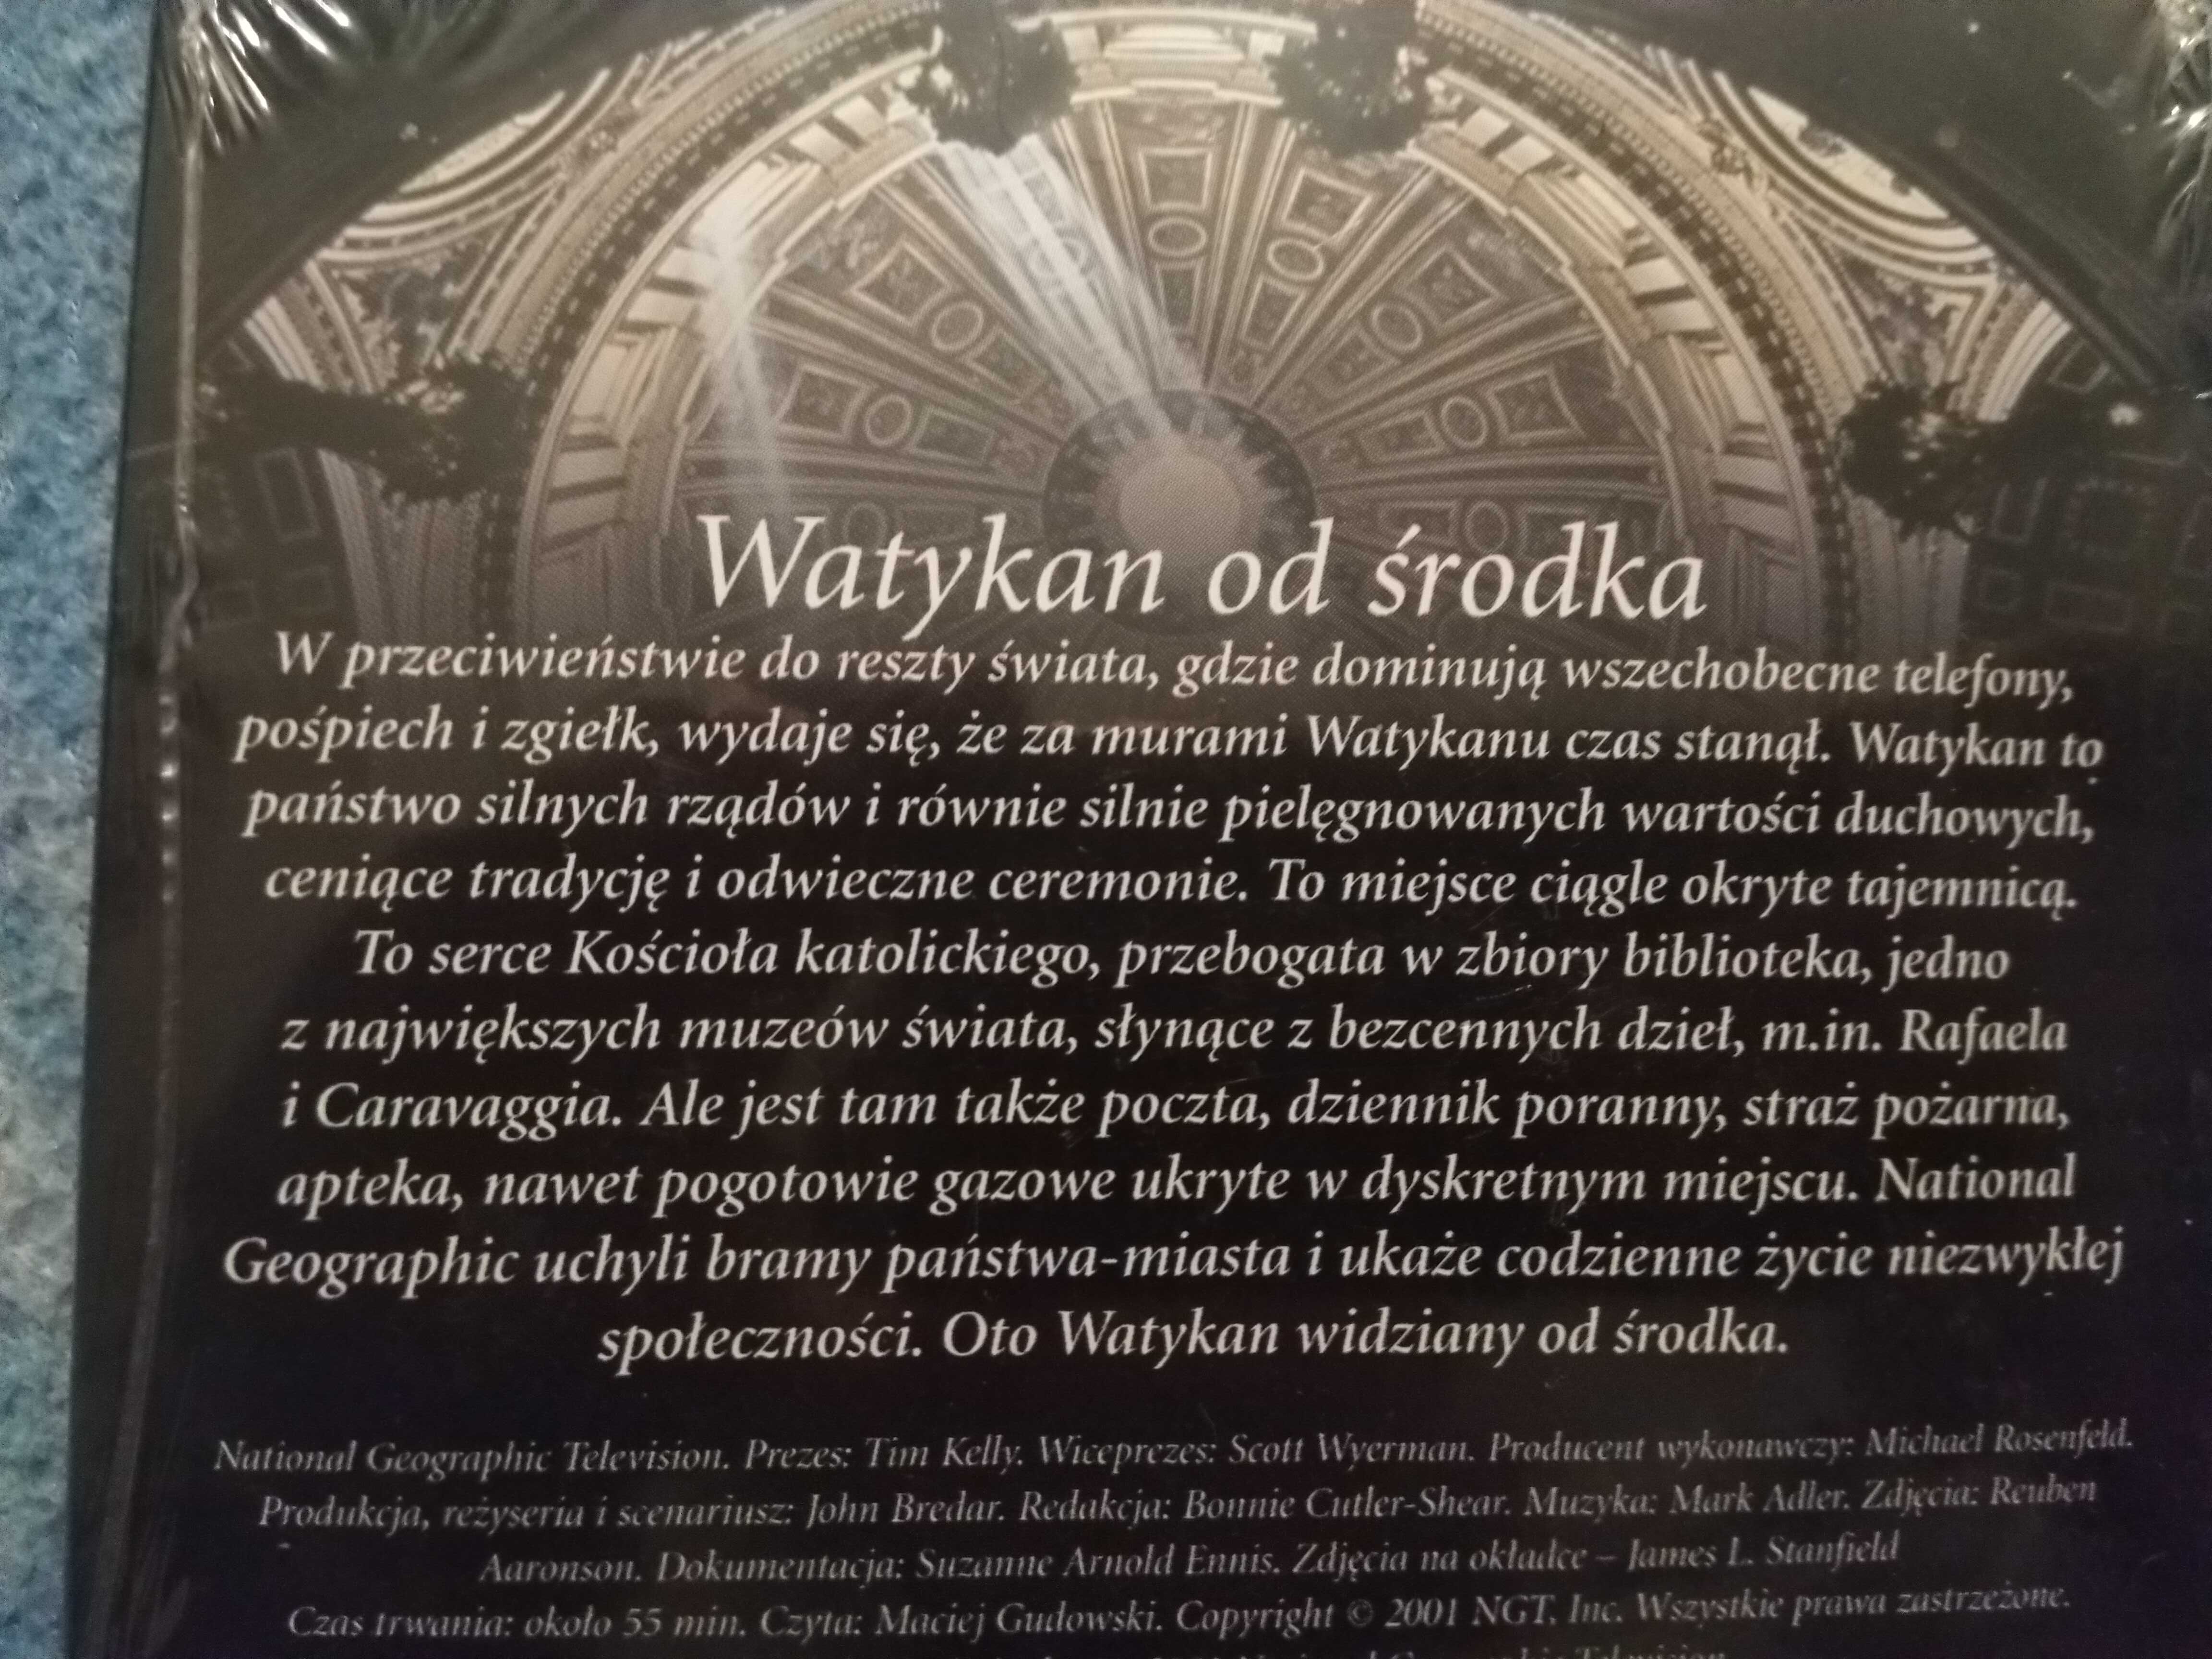 Watykan od srodka - nowa płyta dvd Jan Paweł II